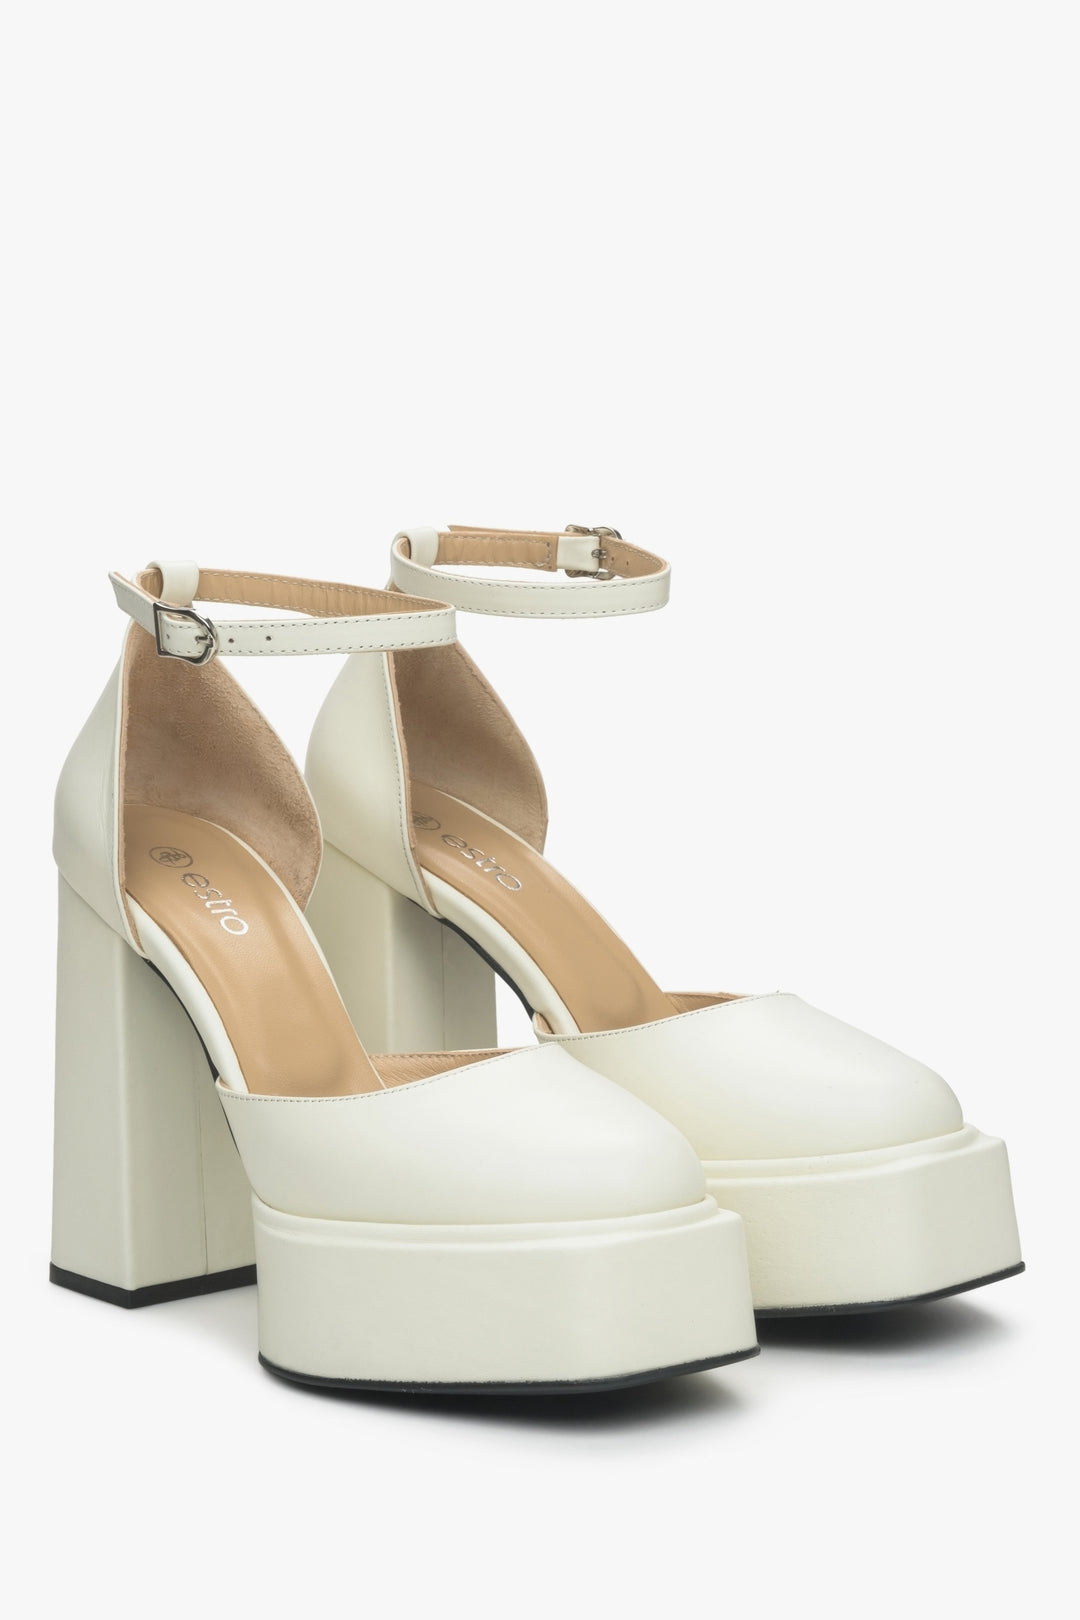 Sandały damskie mleczno-beżowe ze skóry naturalnej Estro - profil butów.